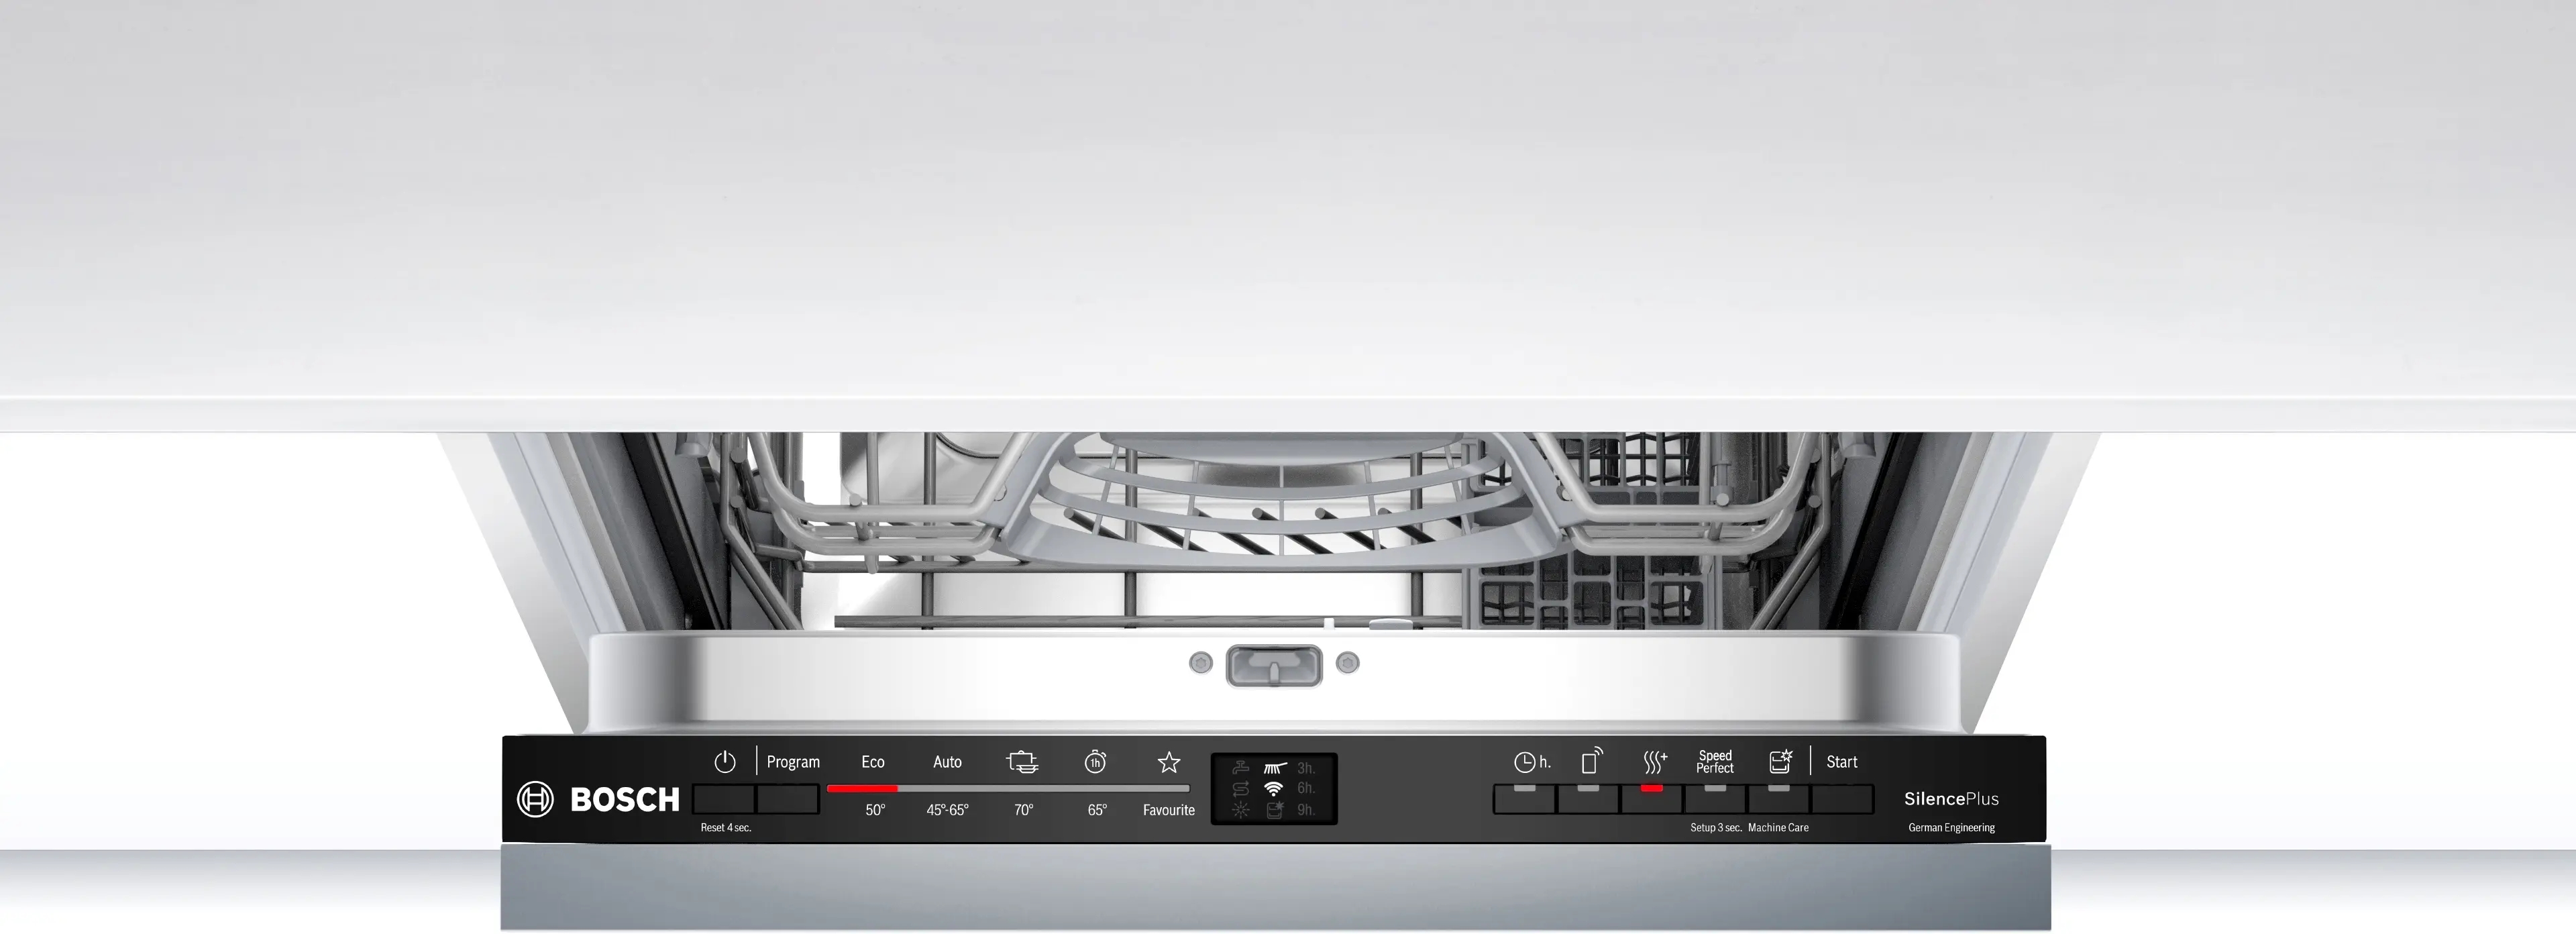 Посудомоечная машина Bosch SPV2IKX10K отзывы - изображения 5